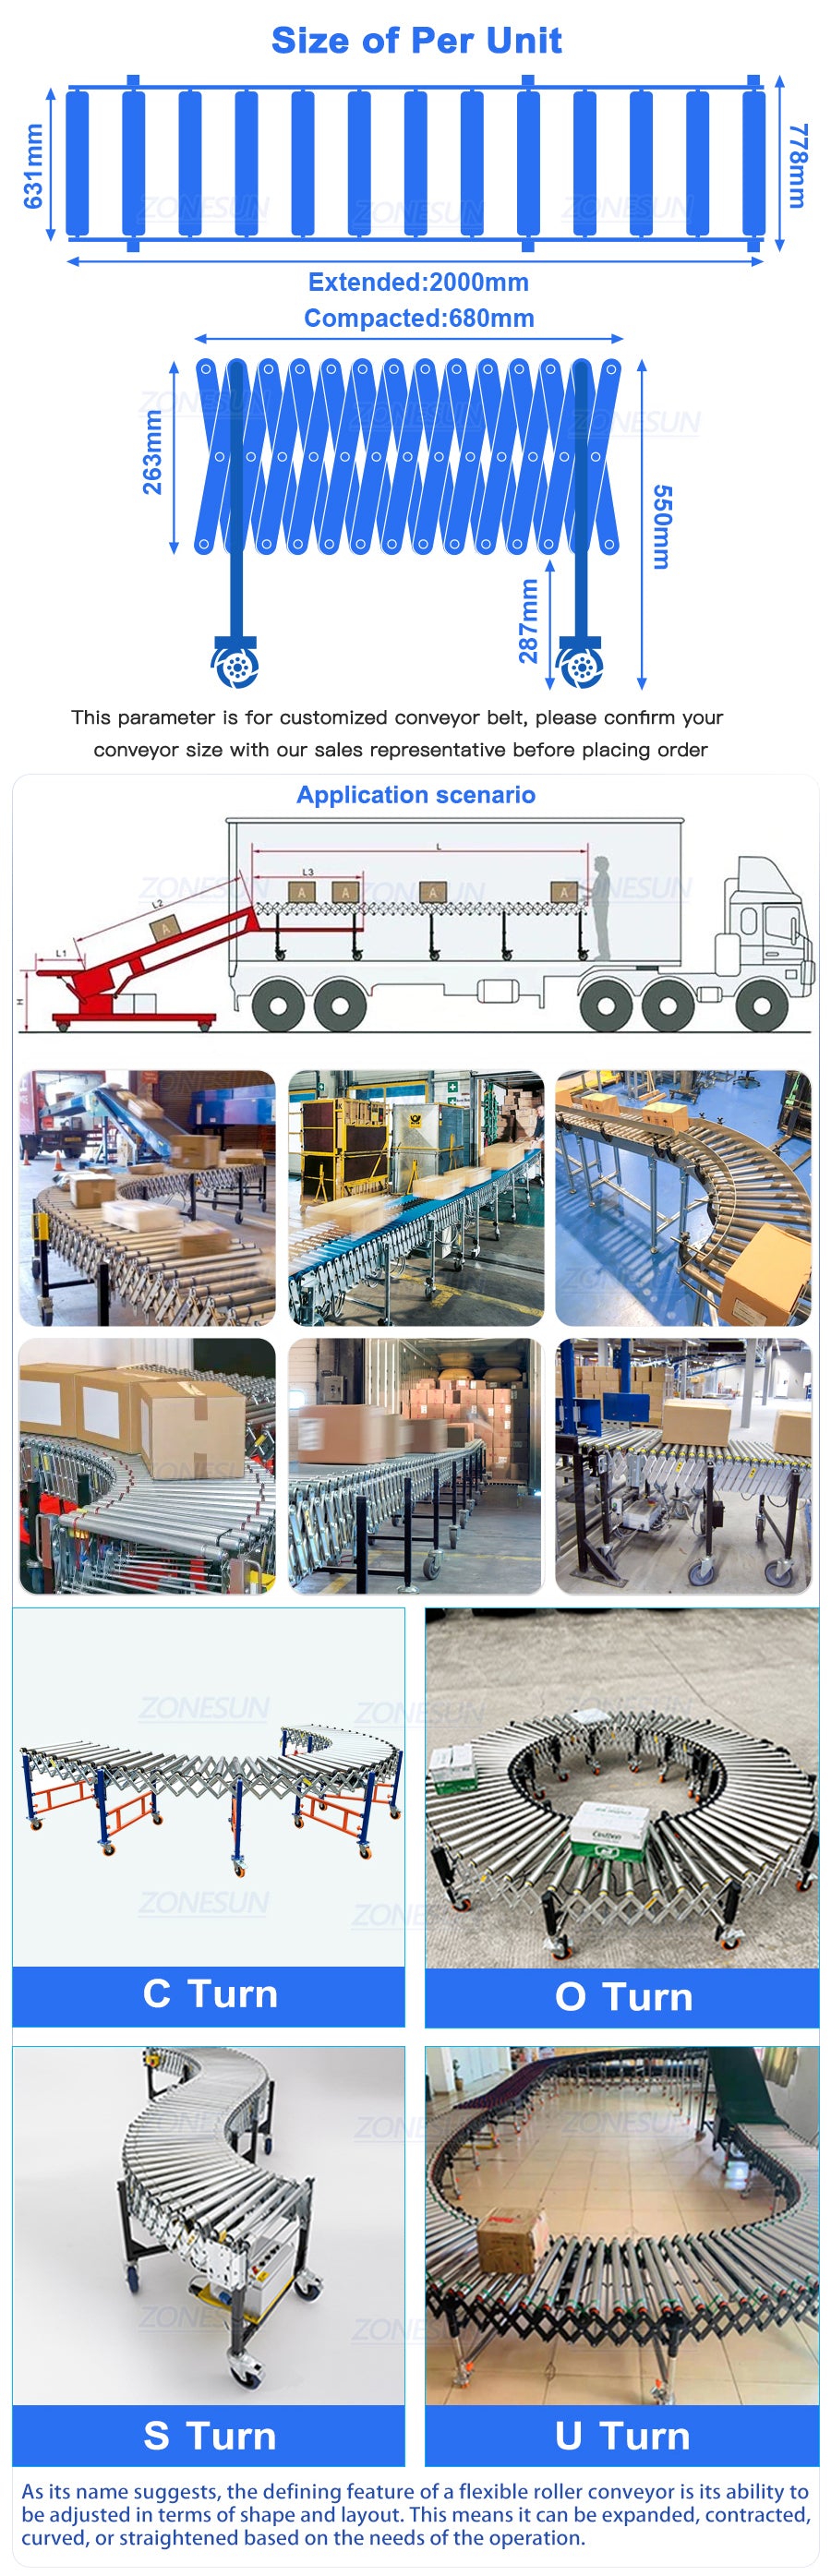 application of flexible roller conveyor